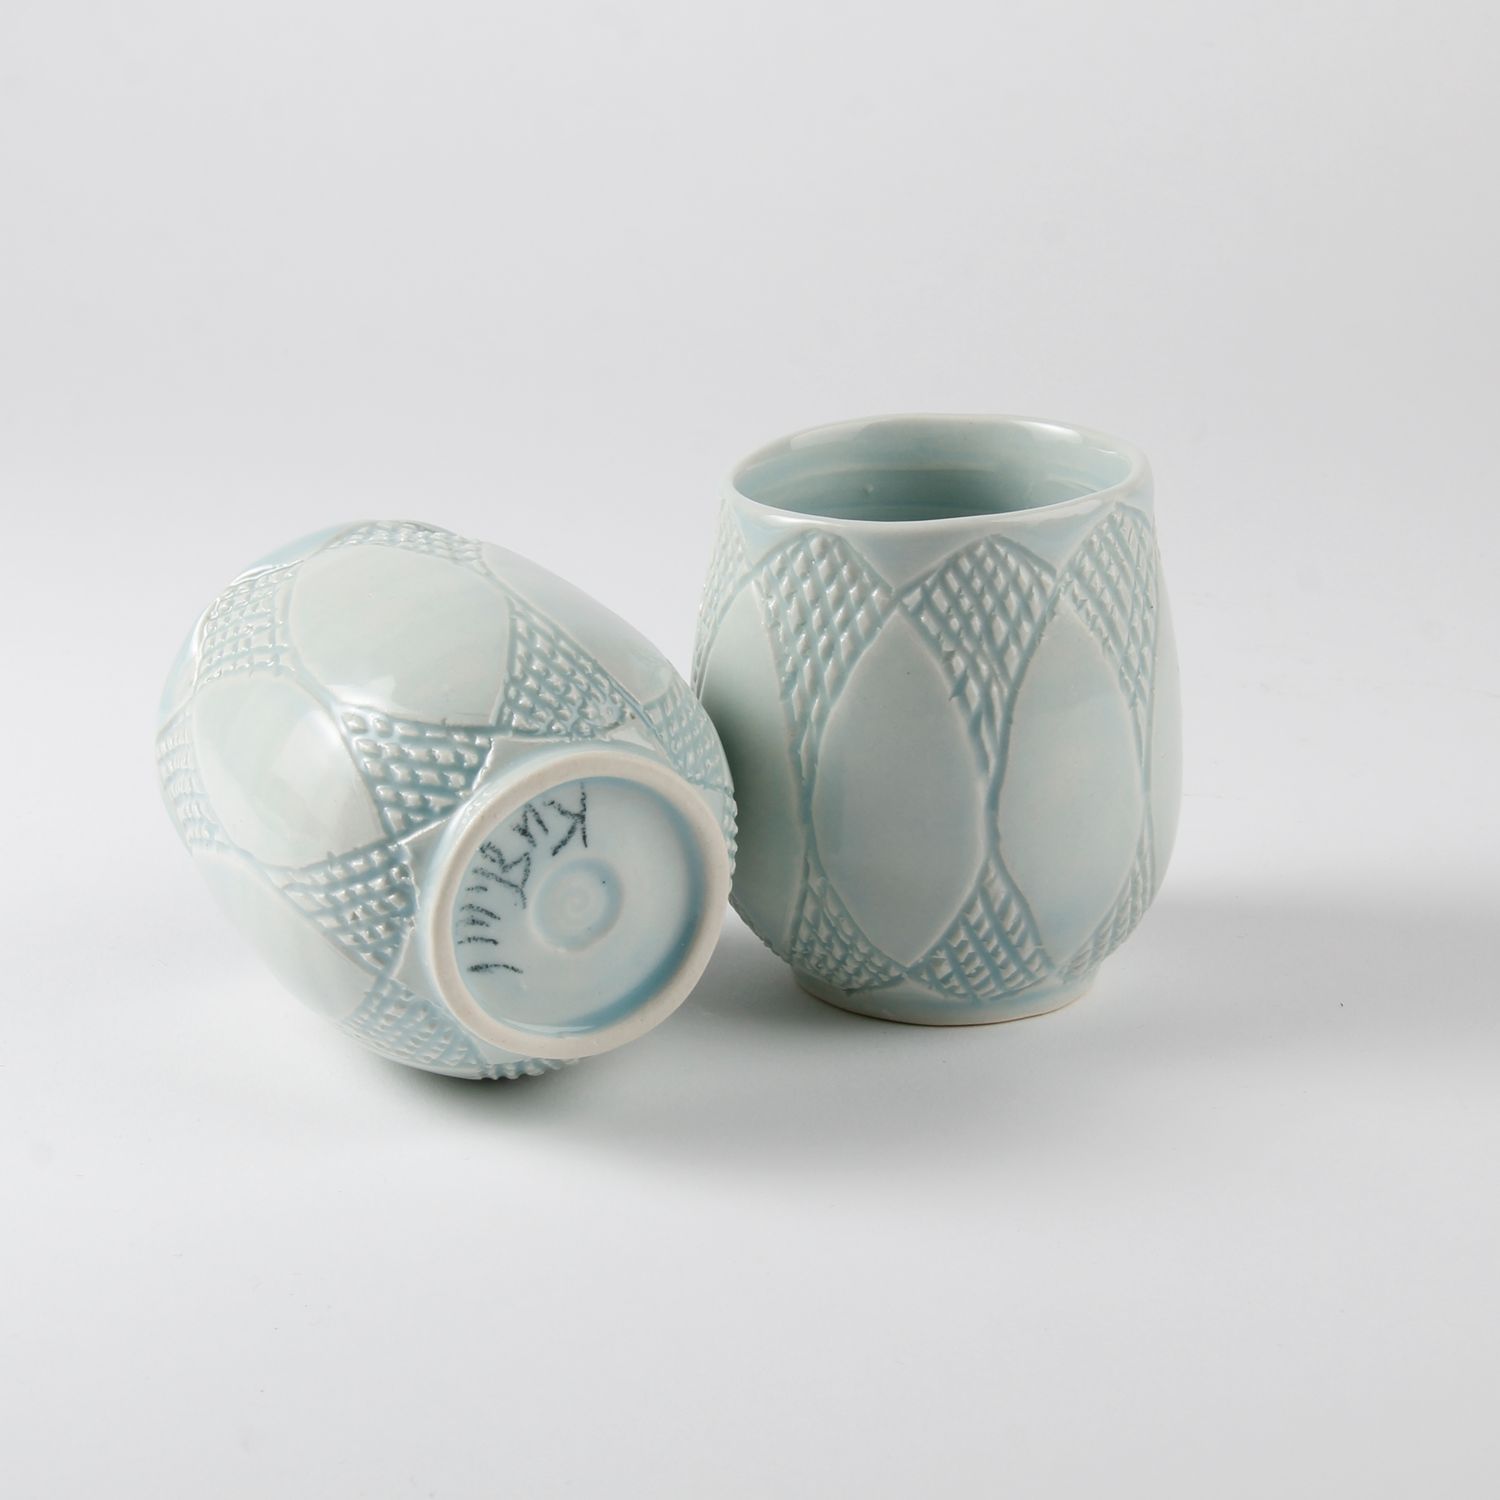 Arlene Kushnir: Carved Cup – Celadon Product Image 2 of 2